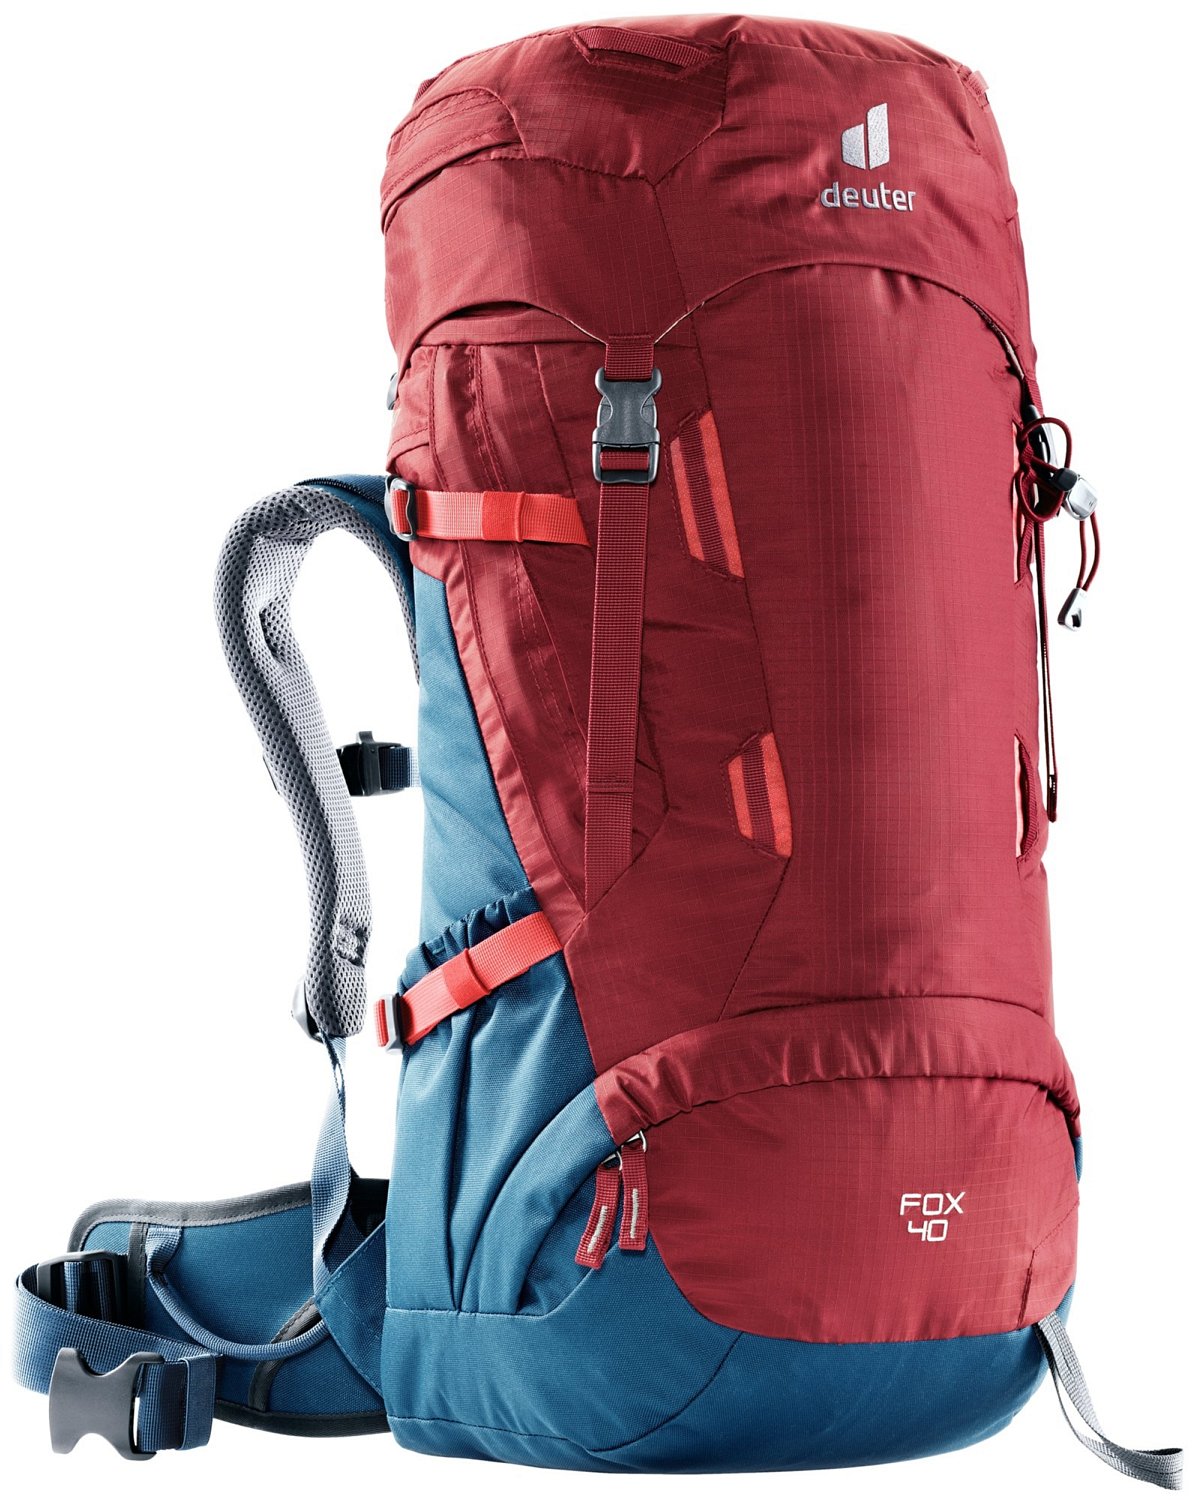 Рюкзак туристический Deuter Fox, детский, 40 л, Cranberry/Steel, 2021, 3611221_5316 bestway рюкзак horizon s edge 30 л